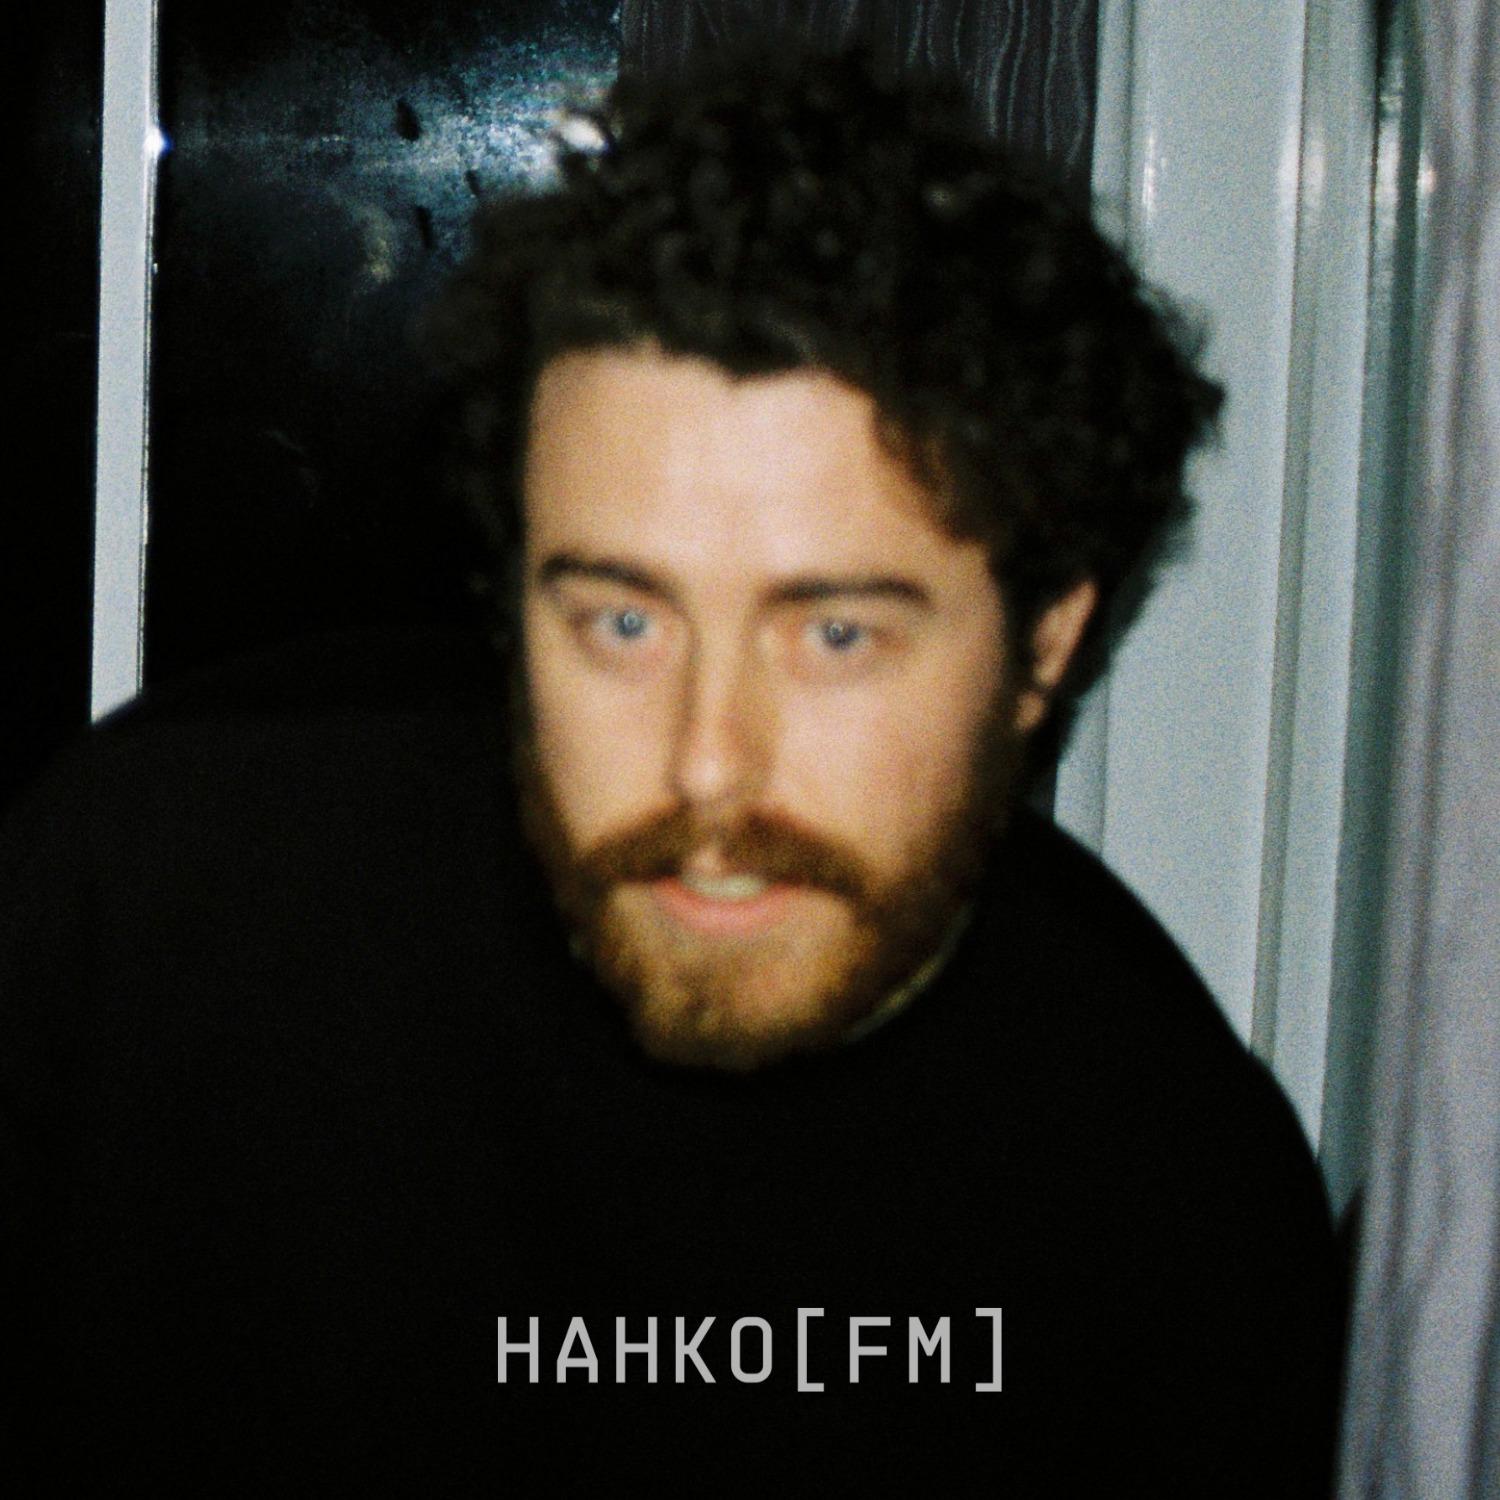 Hahko FM